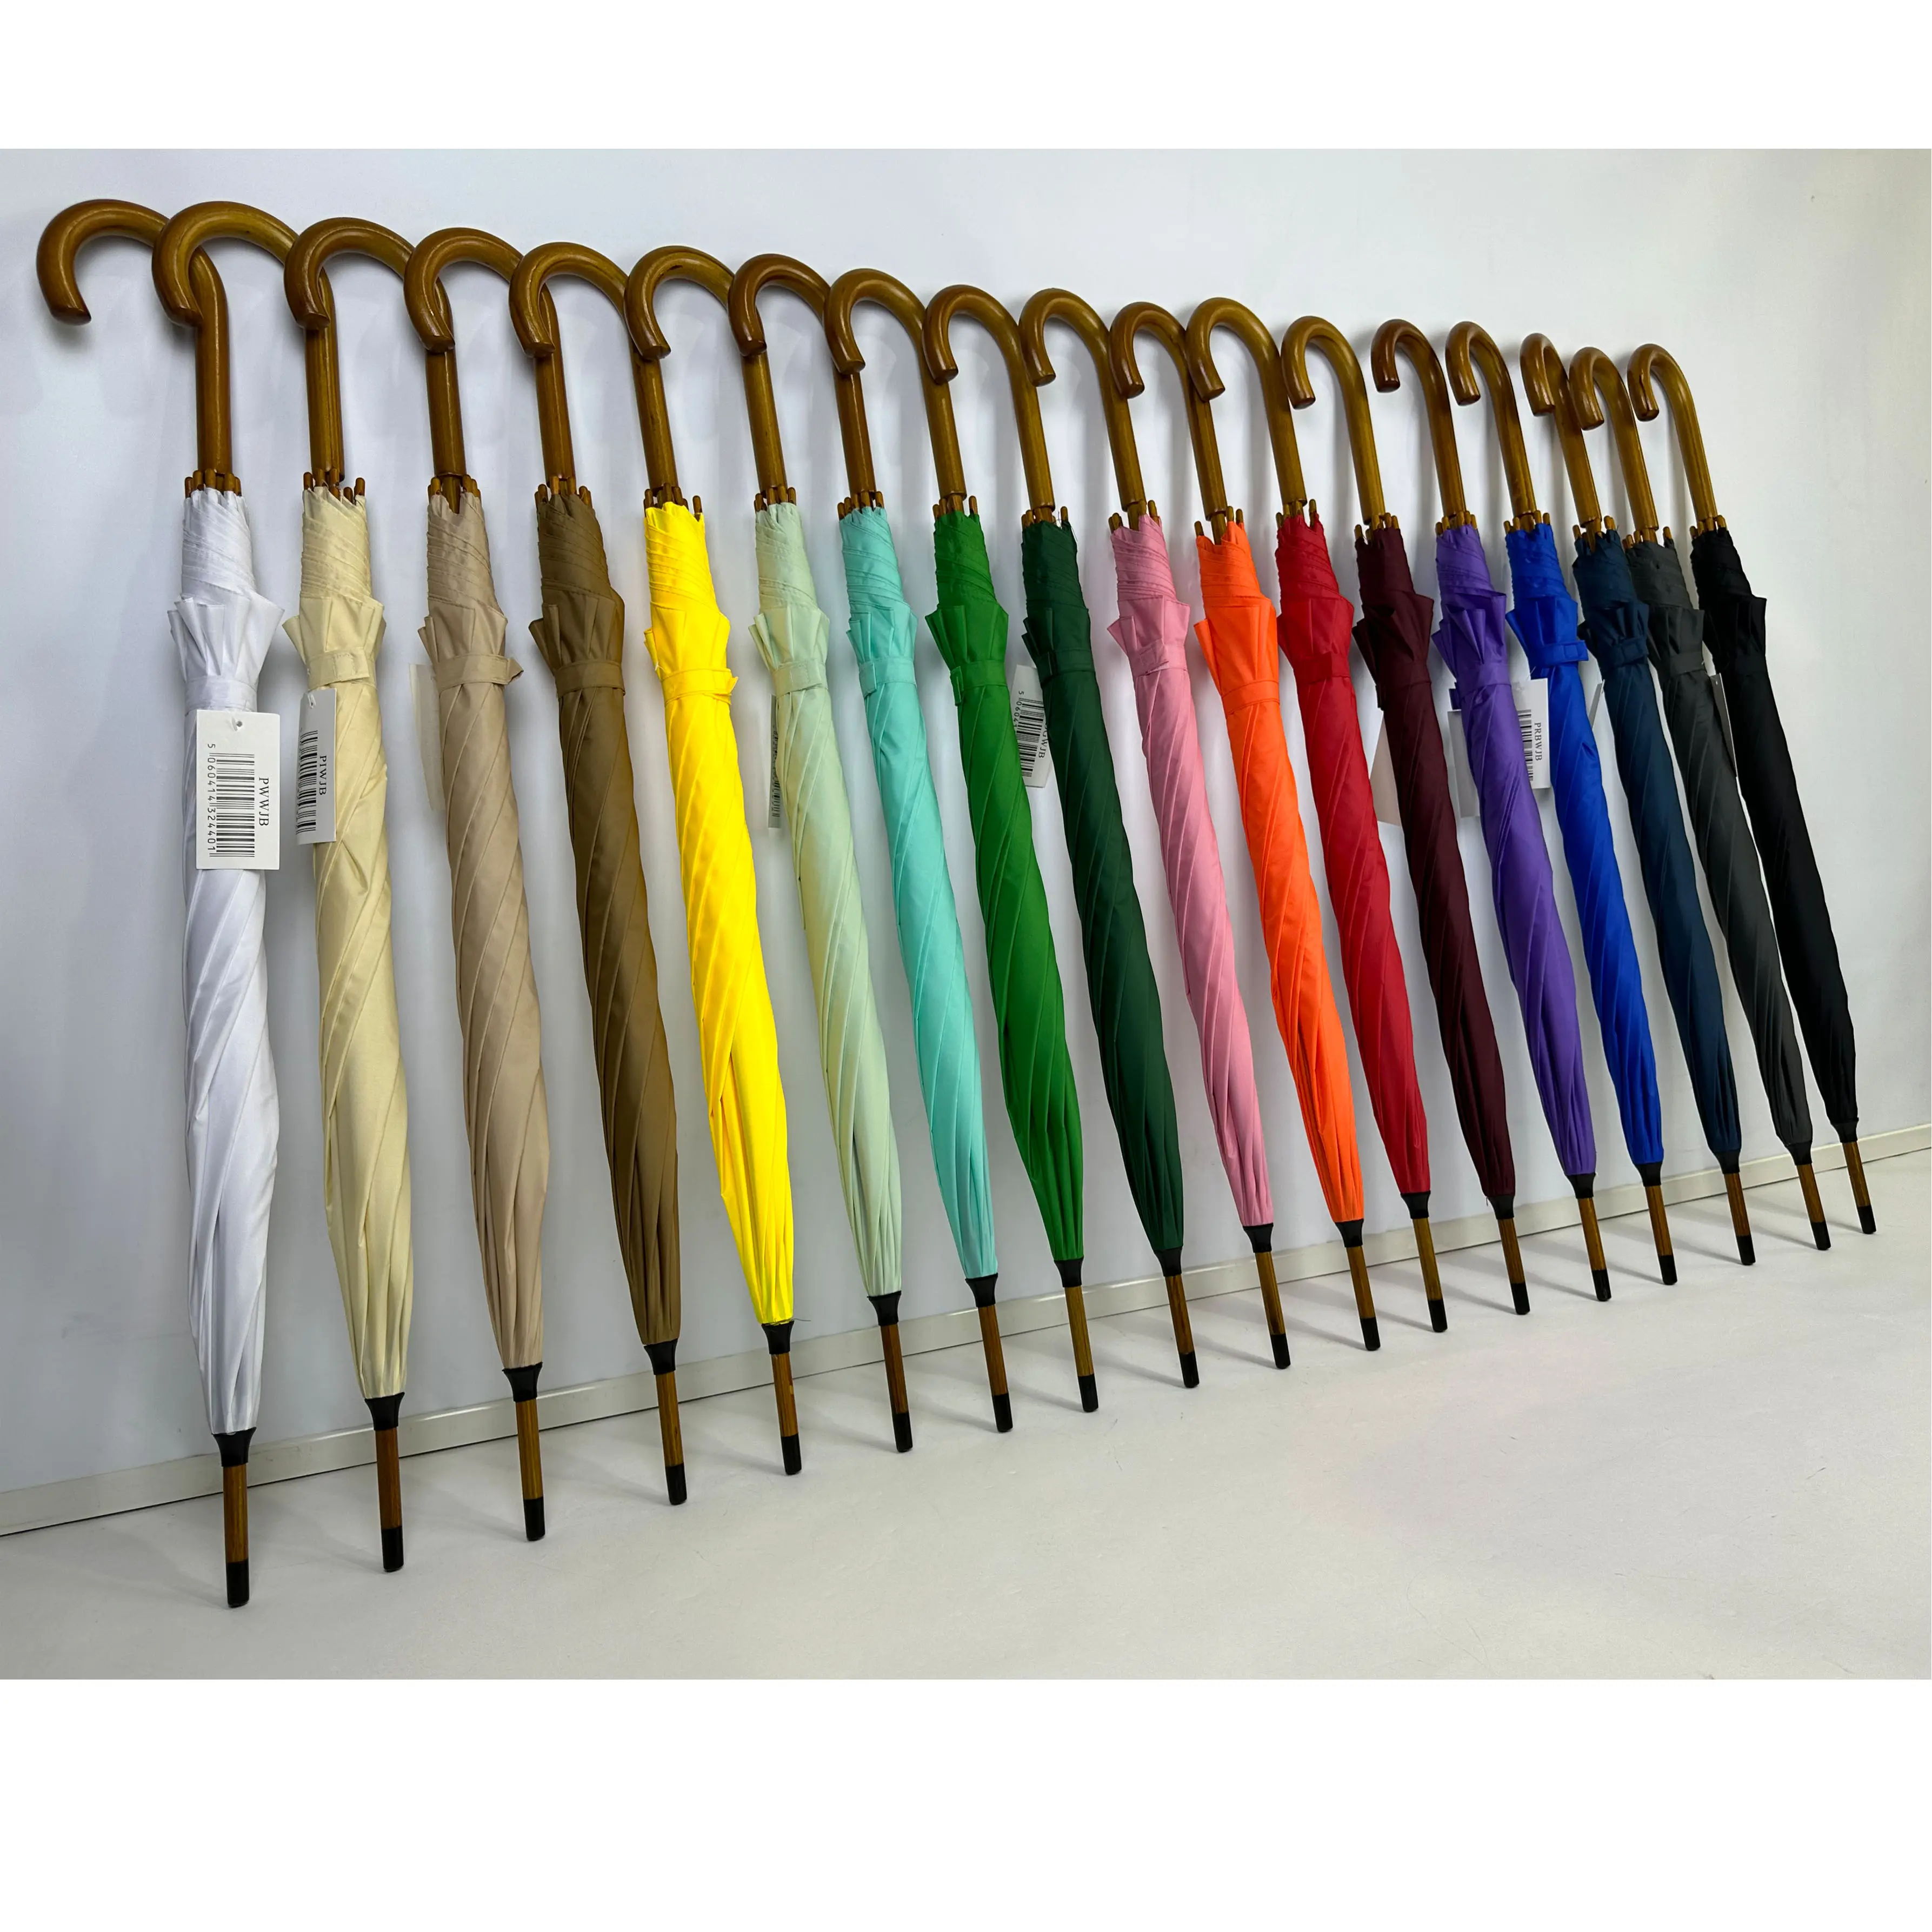 Paraguas de Golf con mango en J de madera, sombrilla de bastón clásico con protección UV a prueba de viento, diseño clásico promocional